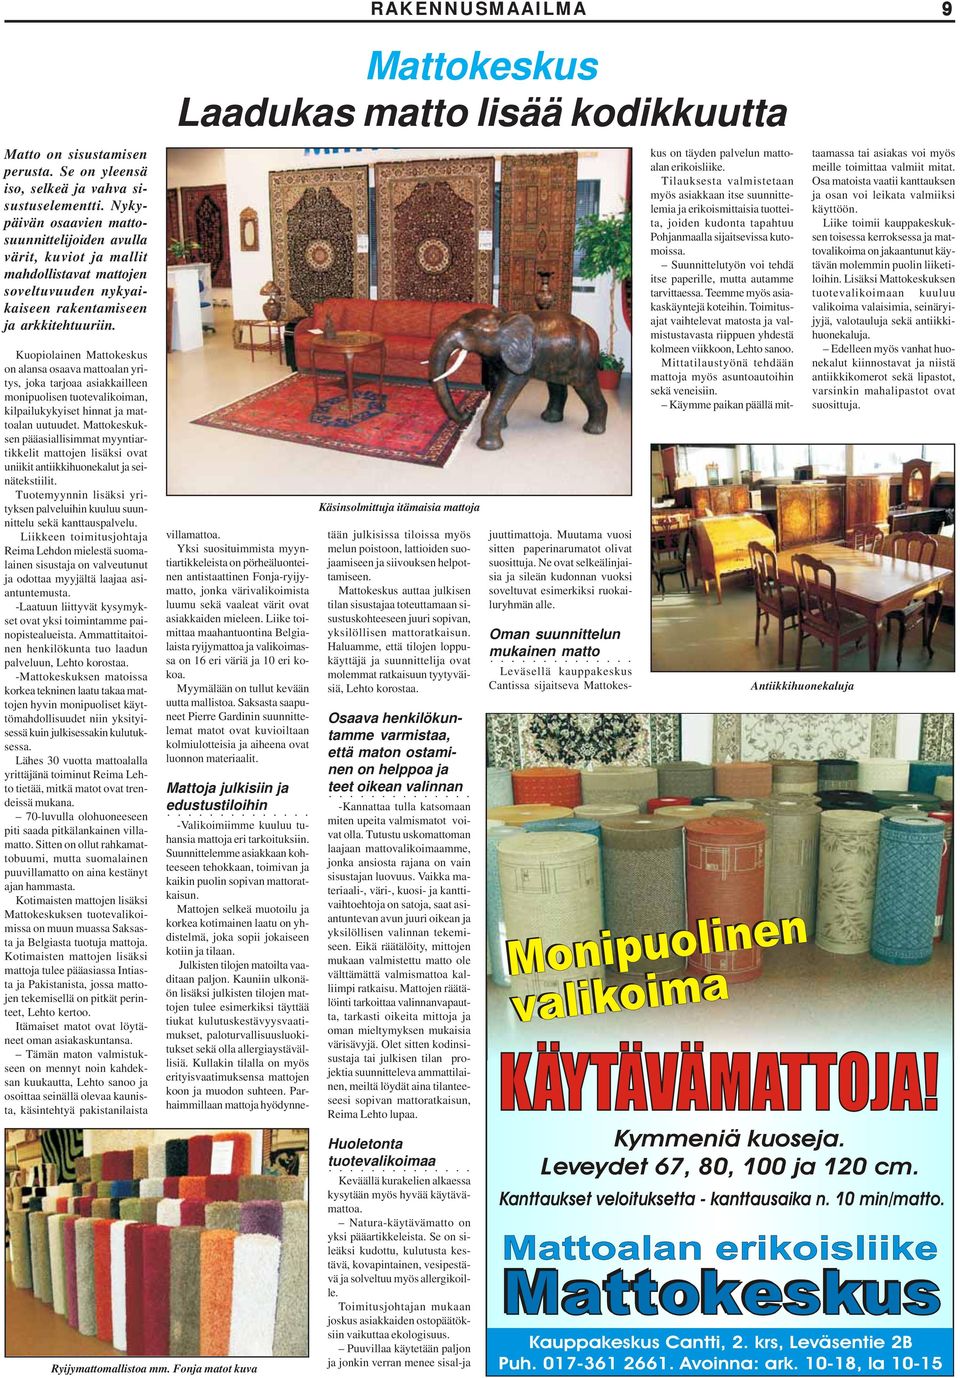 Kuopiolainen Mattokeskus on alansa osaava mattoalan yritys, joka tarjoaa asiakkailleen monipuolisen tuotevalikoiman, kilpailukykyiset hinnat ja mattoalan uutuudet.